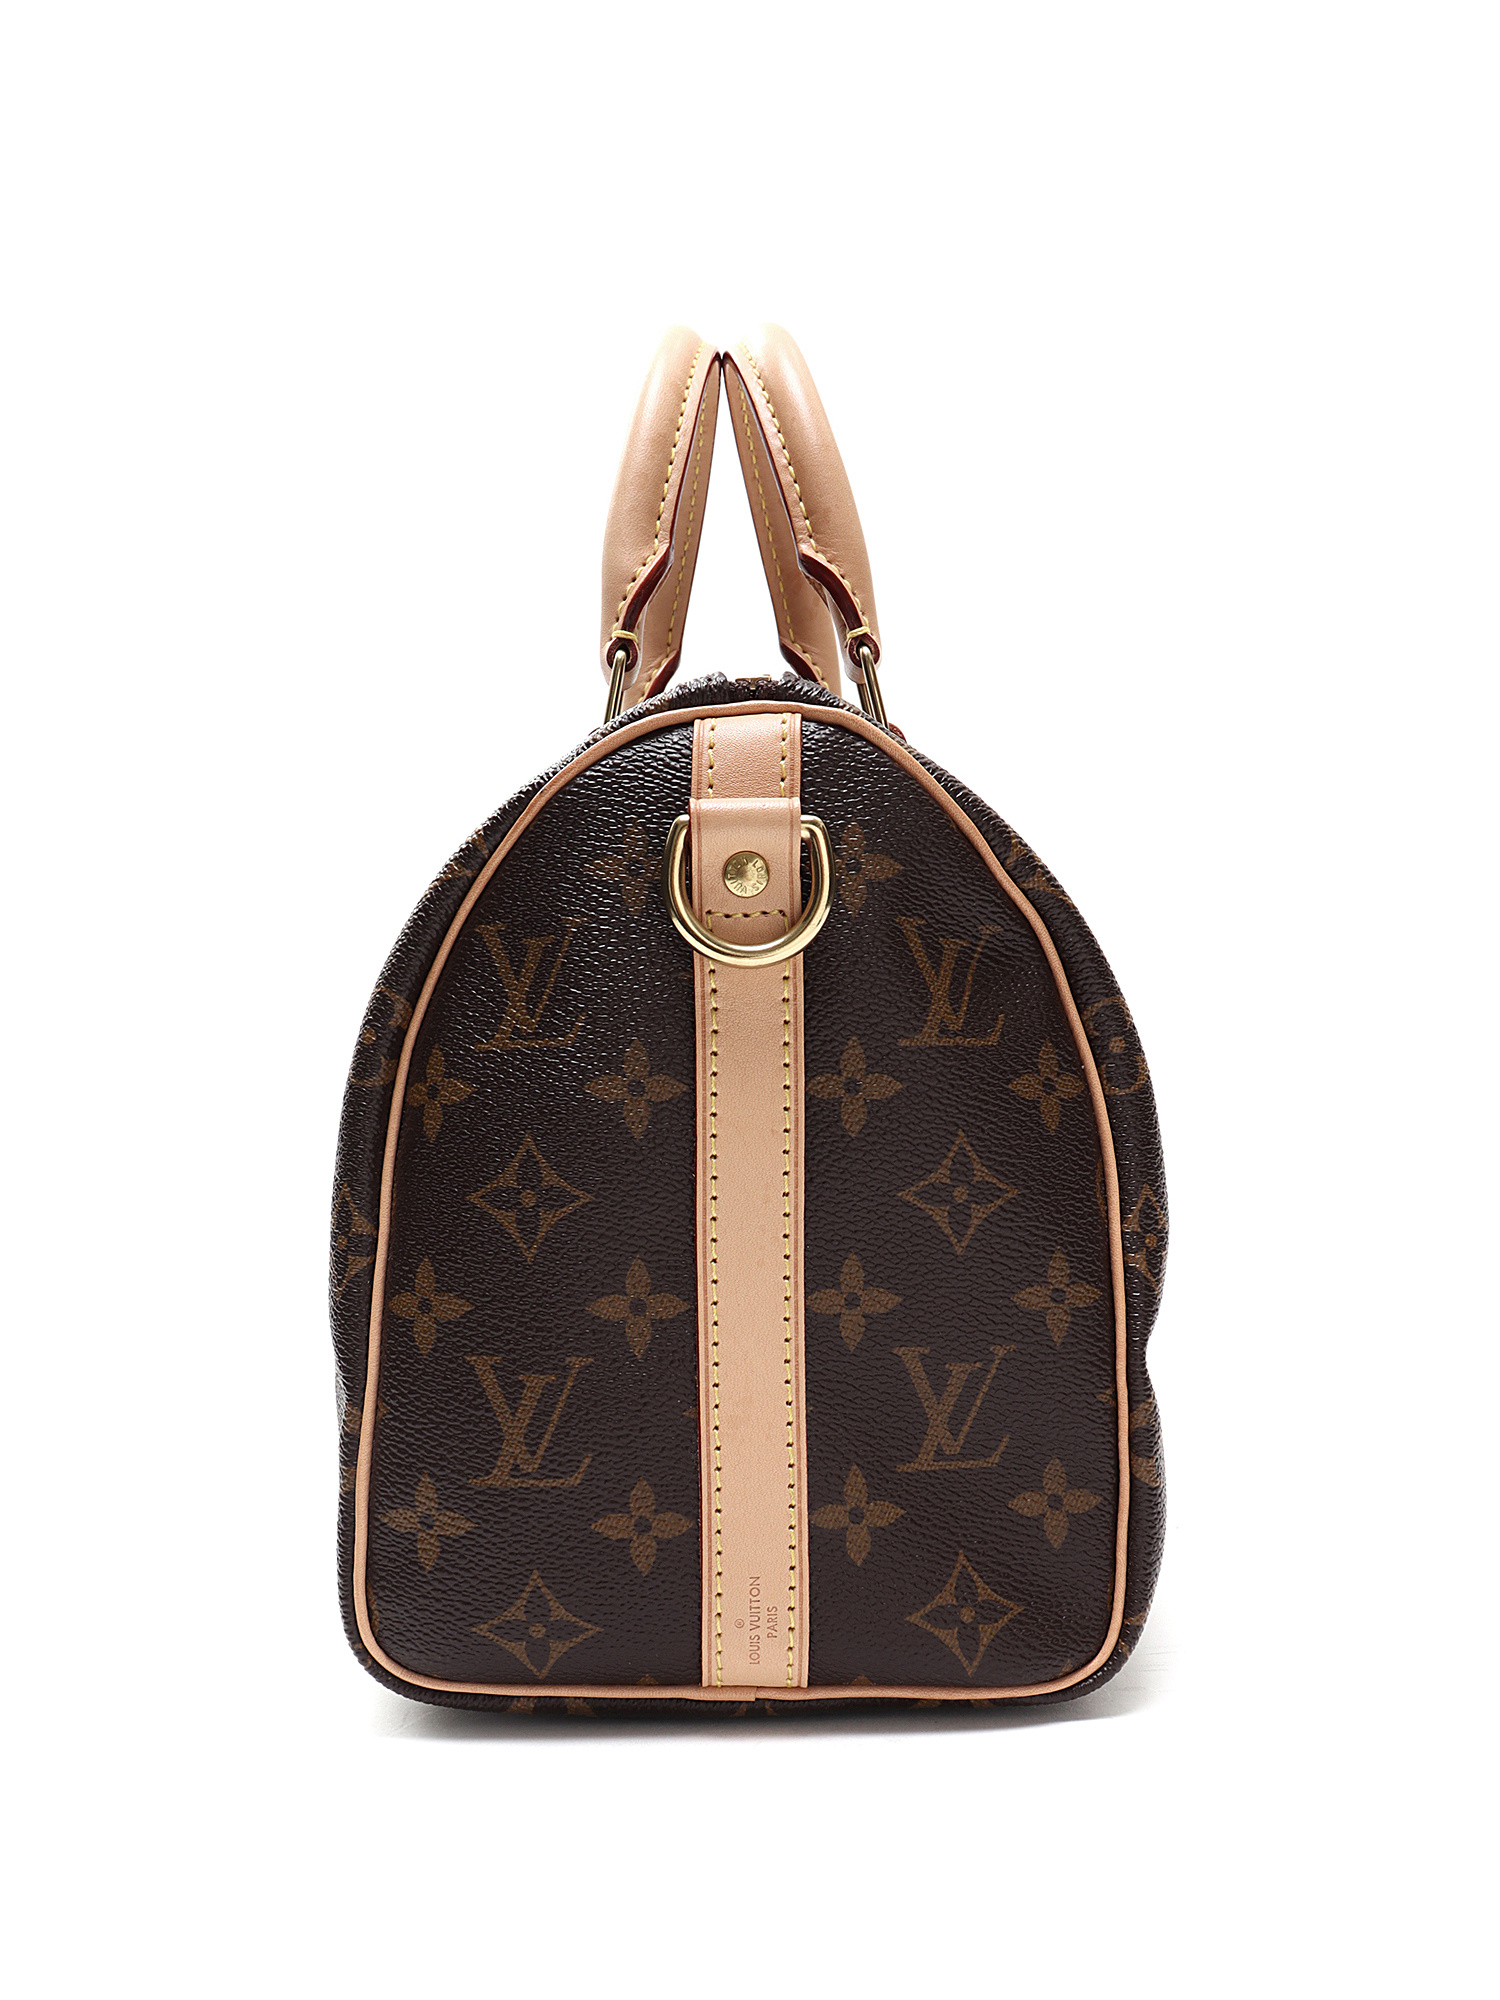 Louis Vuitton Small Monogram Speedy 25 Boston PM Bag 921lv60